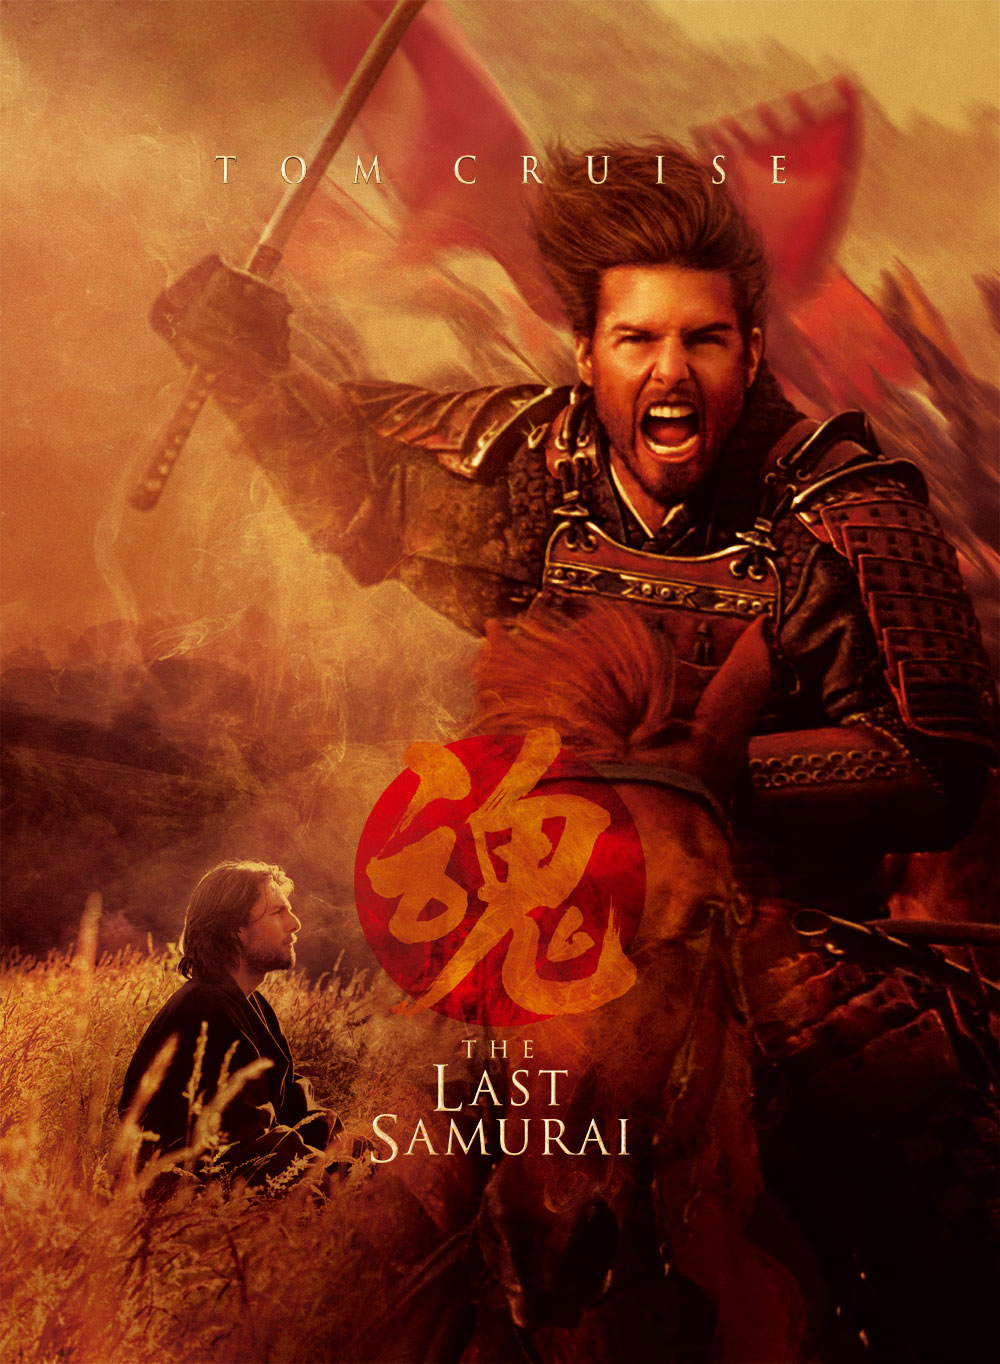   (The Last Samurai, 2003)